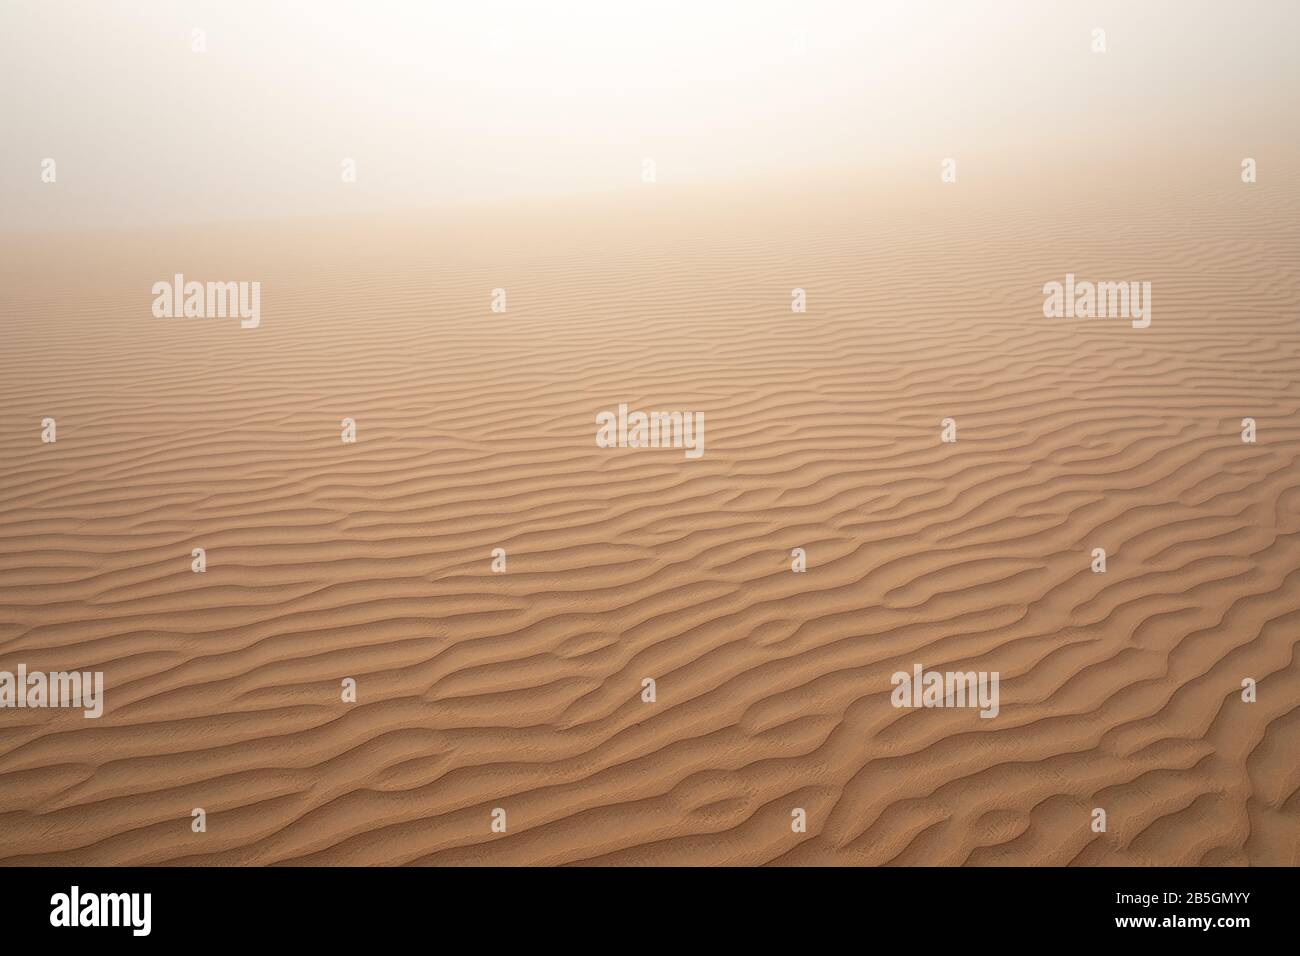 Abstraktes Bild einer gemusterten Sanddüne bei dichtem Nebel an einem Wintermorgen. Liwa-Wüste, Abu Dhabi, Vereinigte Arabische Emirate. Stockfoto